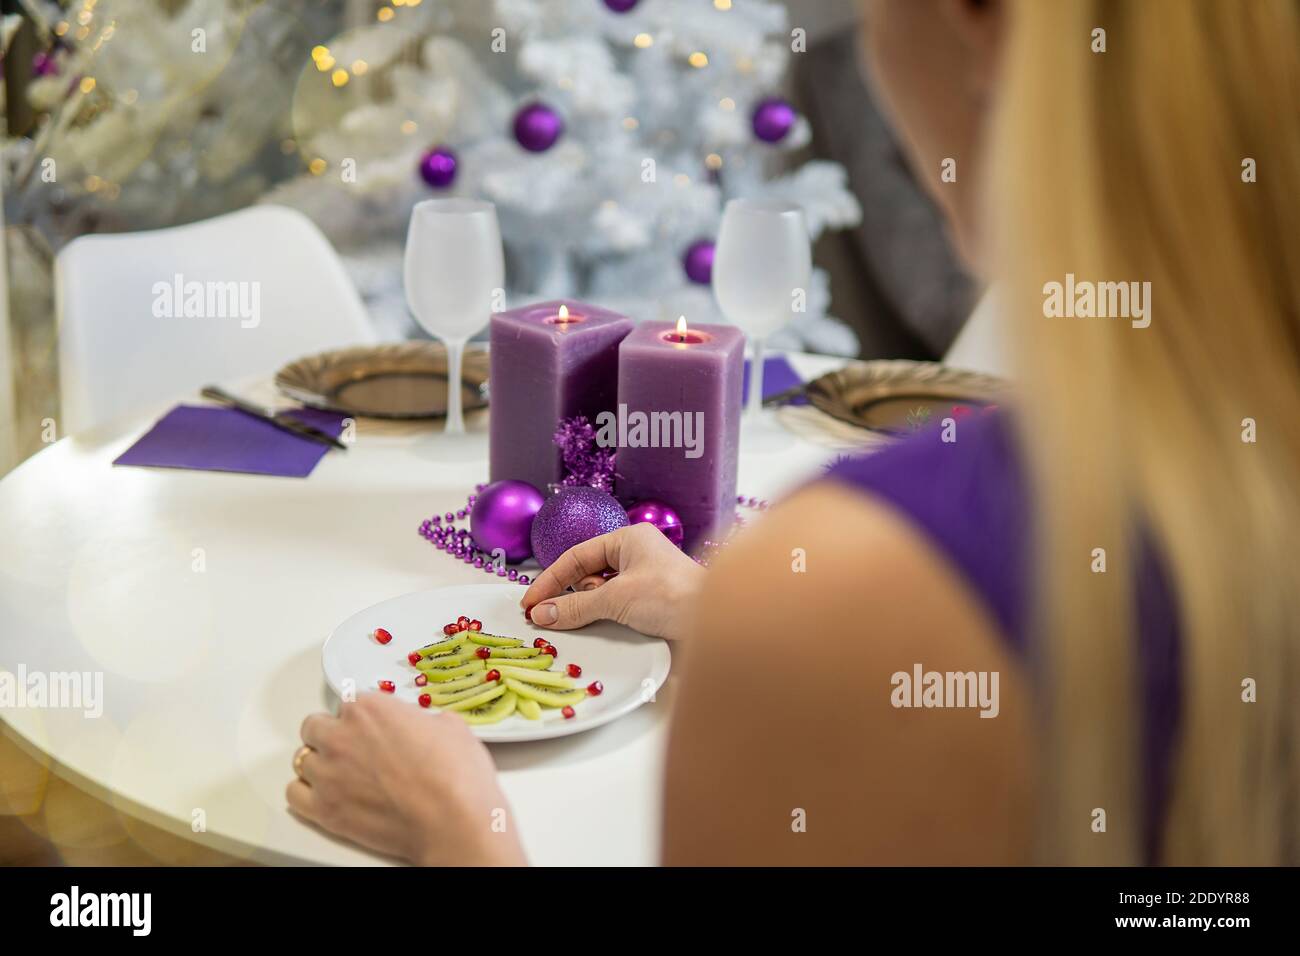 Fille fait la décoration de table de Noël. Kiwi et grenade en forme d'un arbre de noël sur un plateau et des bougies pourpres. De haute qualité Banque D'Images